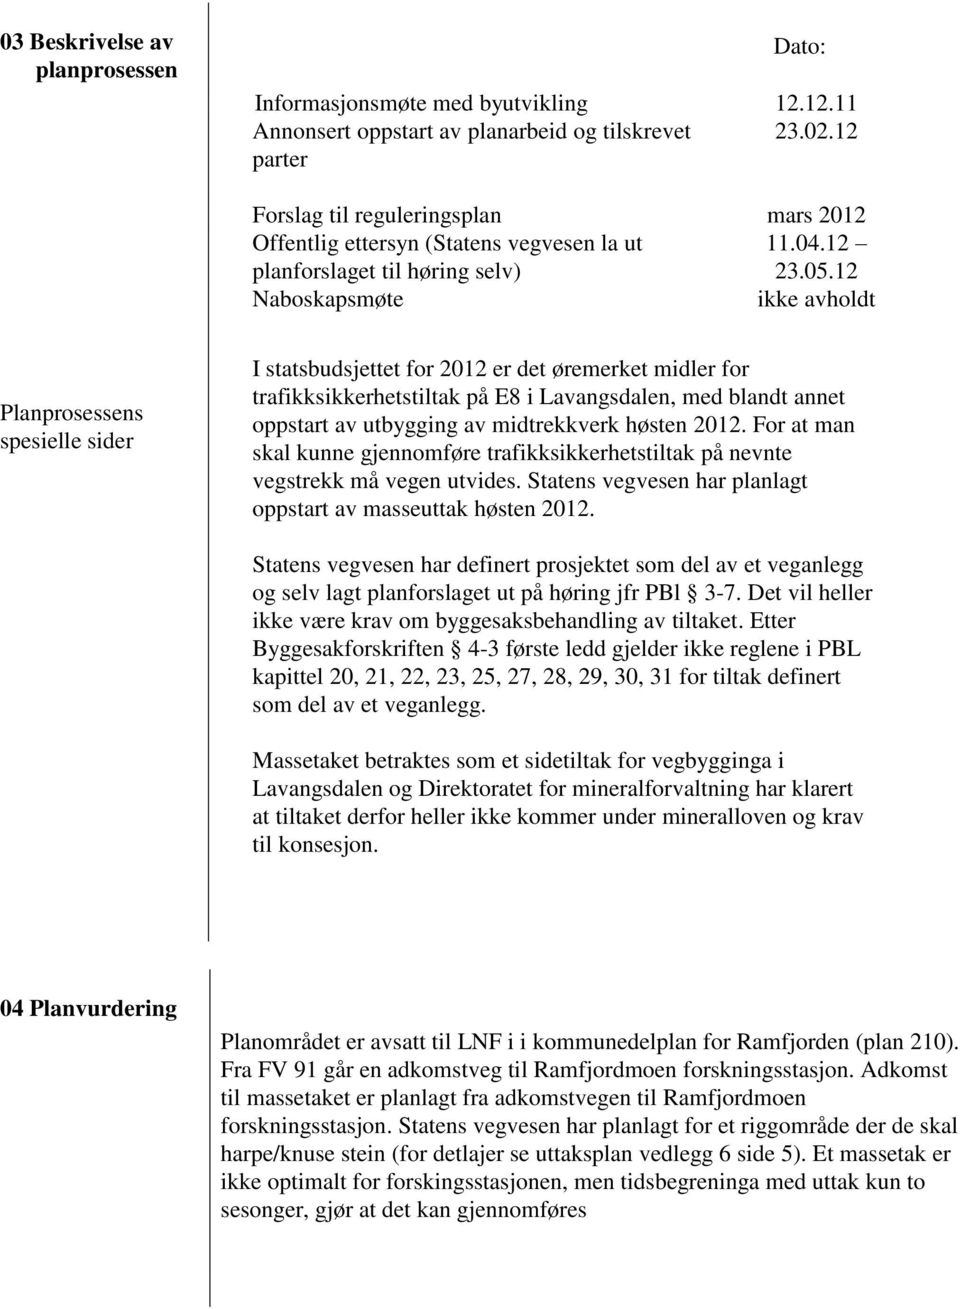 12 Naboskapsmøte ikke avholdt Planprosessens spesielle sider I statsbudsjettet for 2012 er det øremerket midler for trafikksikkerhetstiltak på E8 i Lavangsdalen, med blandt annet oppstart av